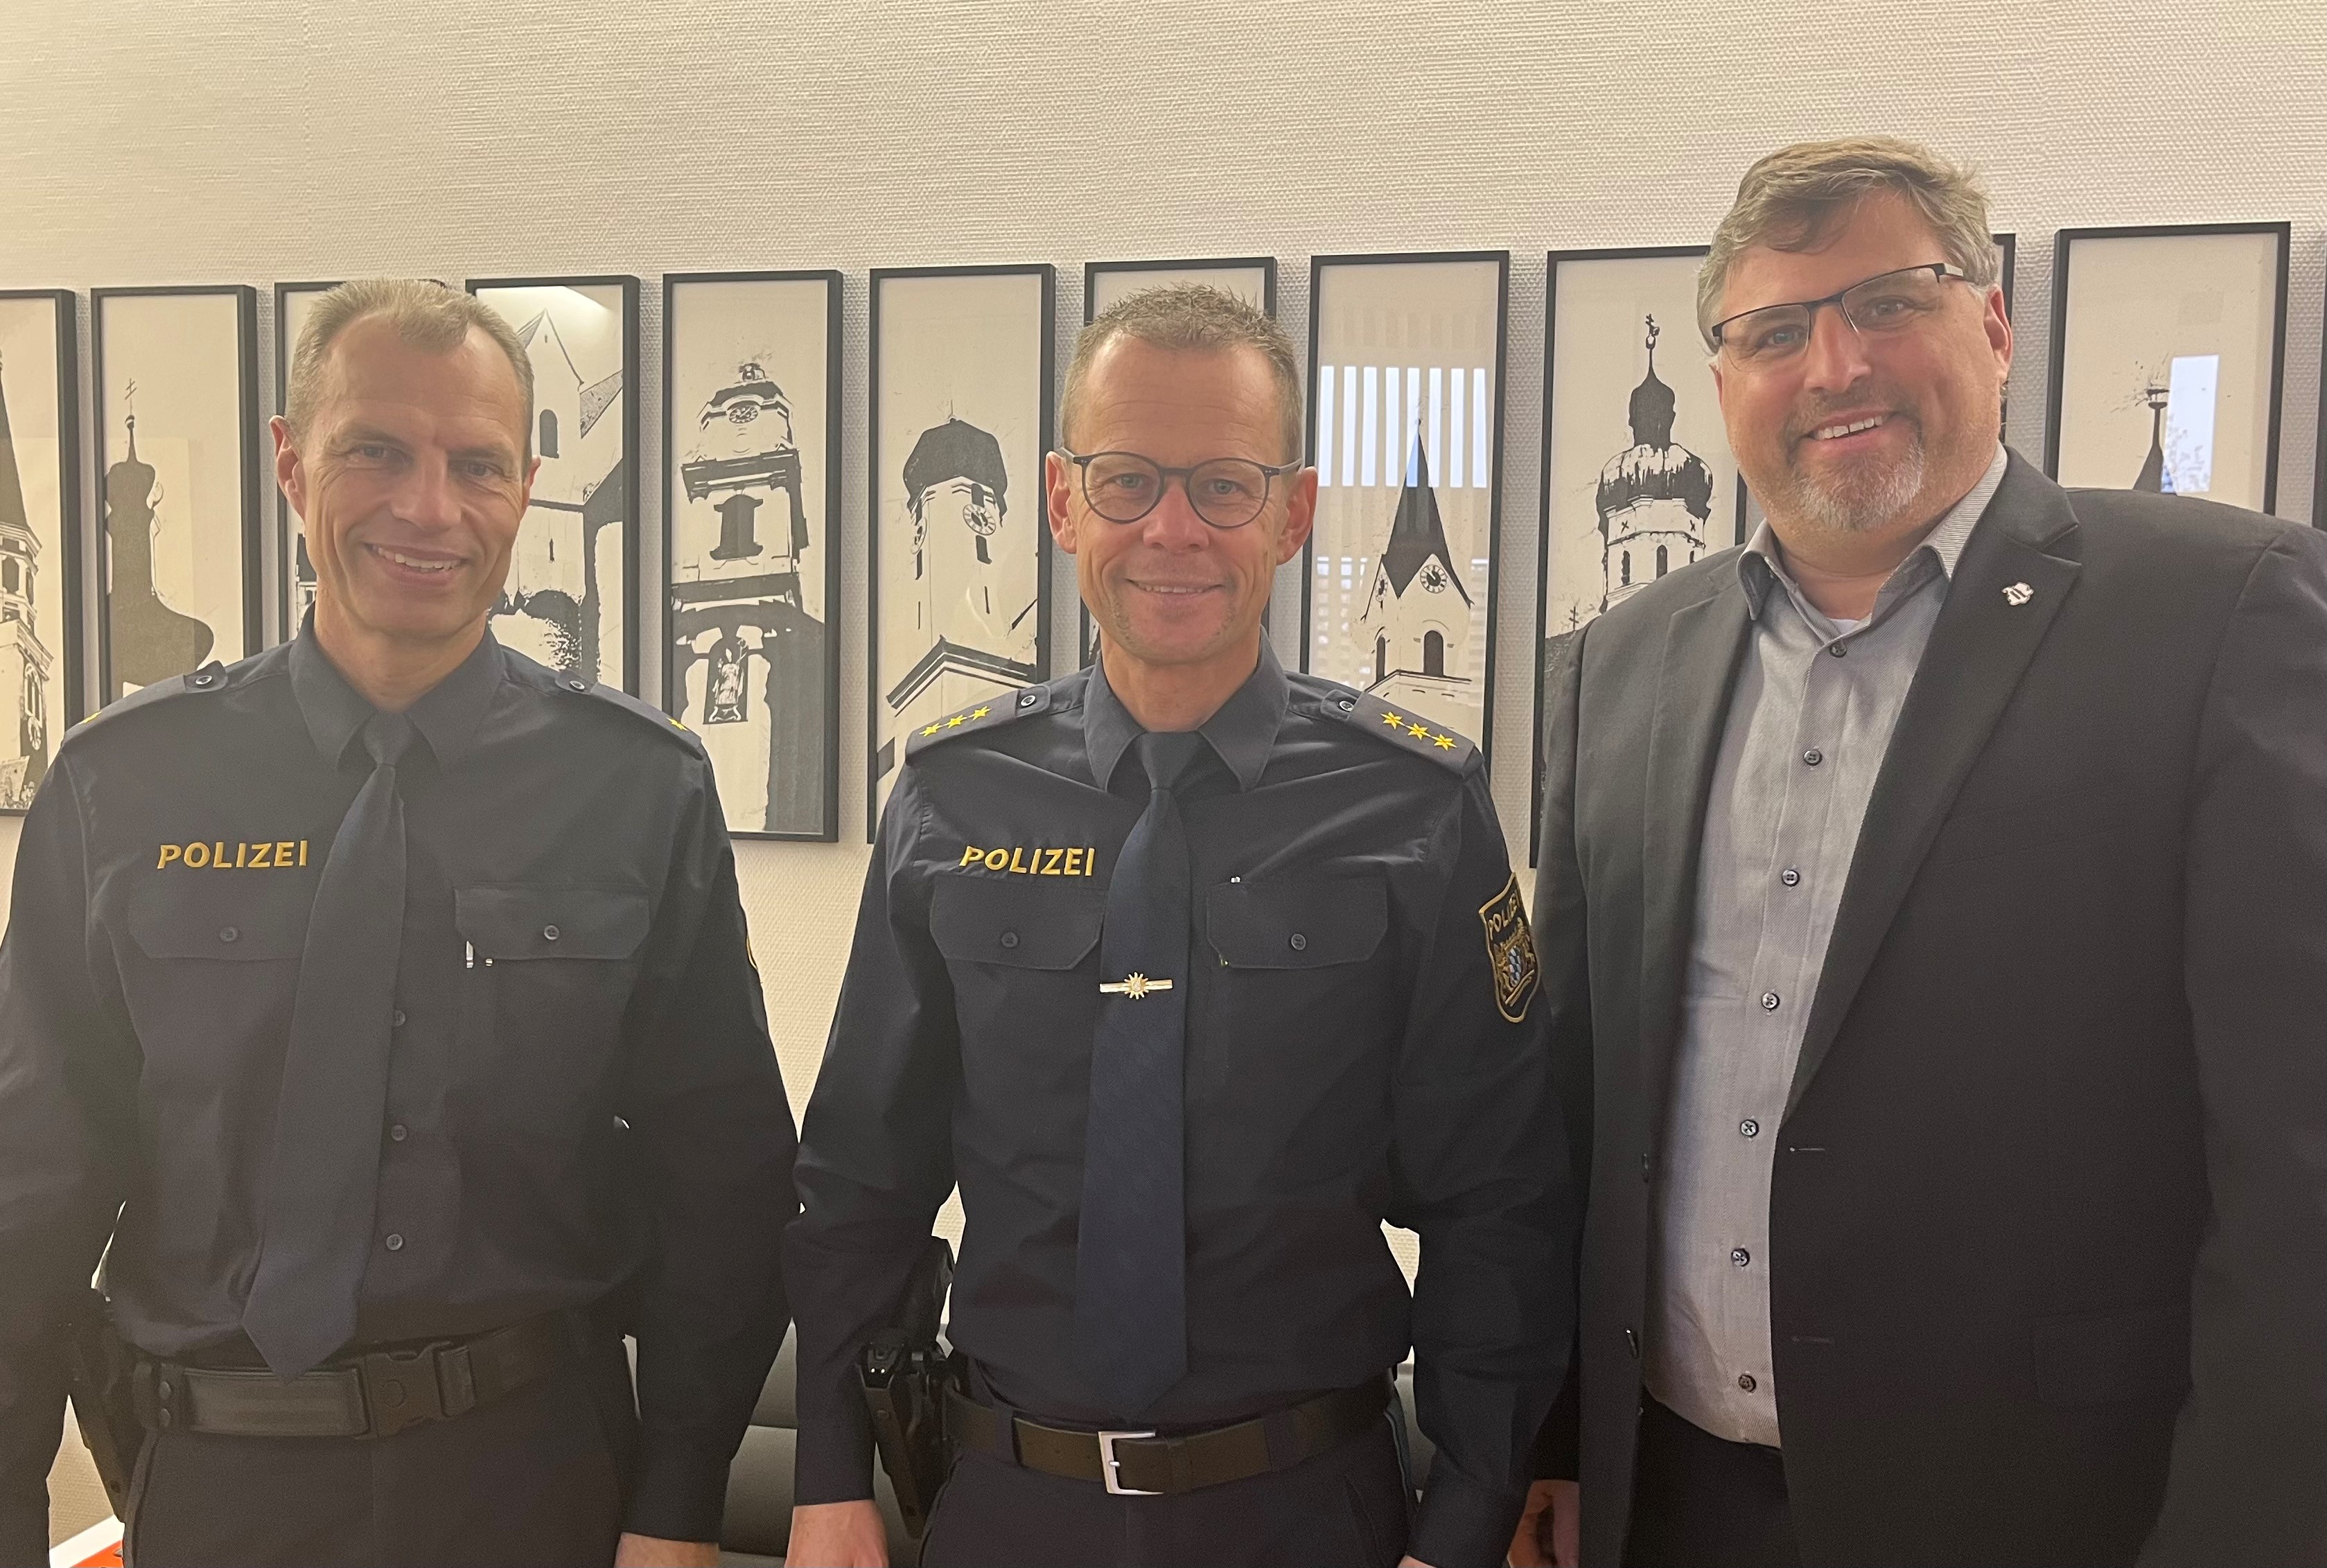 Die neue Polizeidirektion Dachau zu Besuch bei Landrat Stefan Löwl 
Von links nach rechts: PD Jürgen Dreiocker, PD Bernd Waitzmann und Landrat